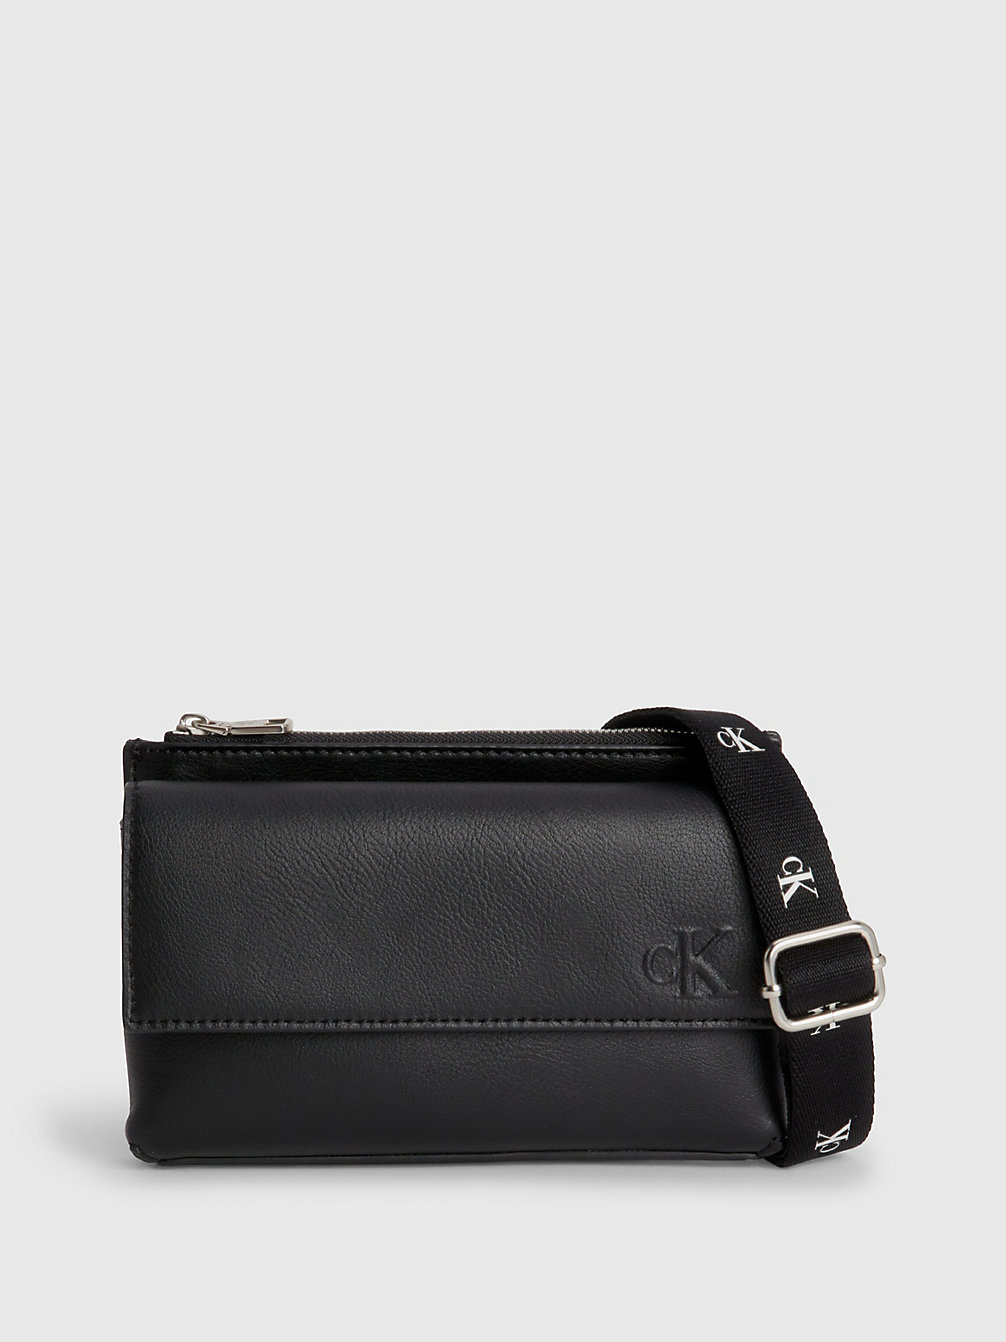 BLACK > Crossbody-Handy-Tasche Aus Recyceltem Material > undefined Damen - Calvin Klein